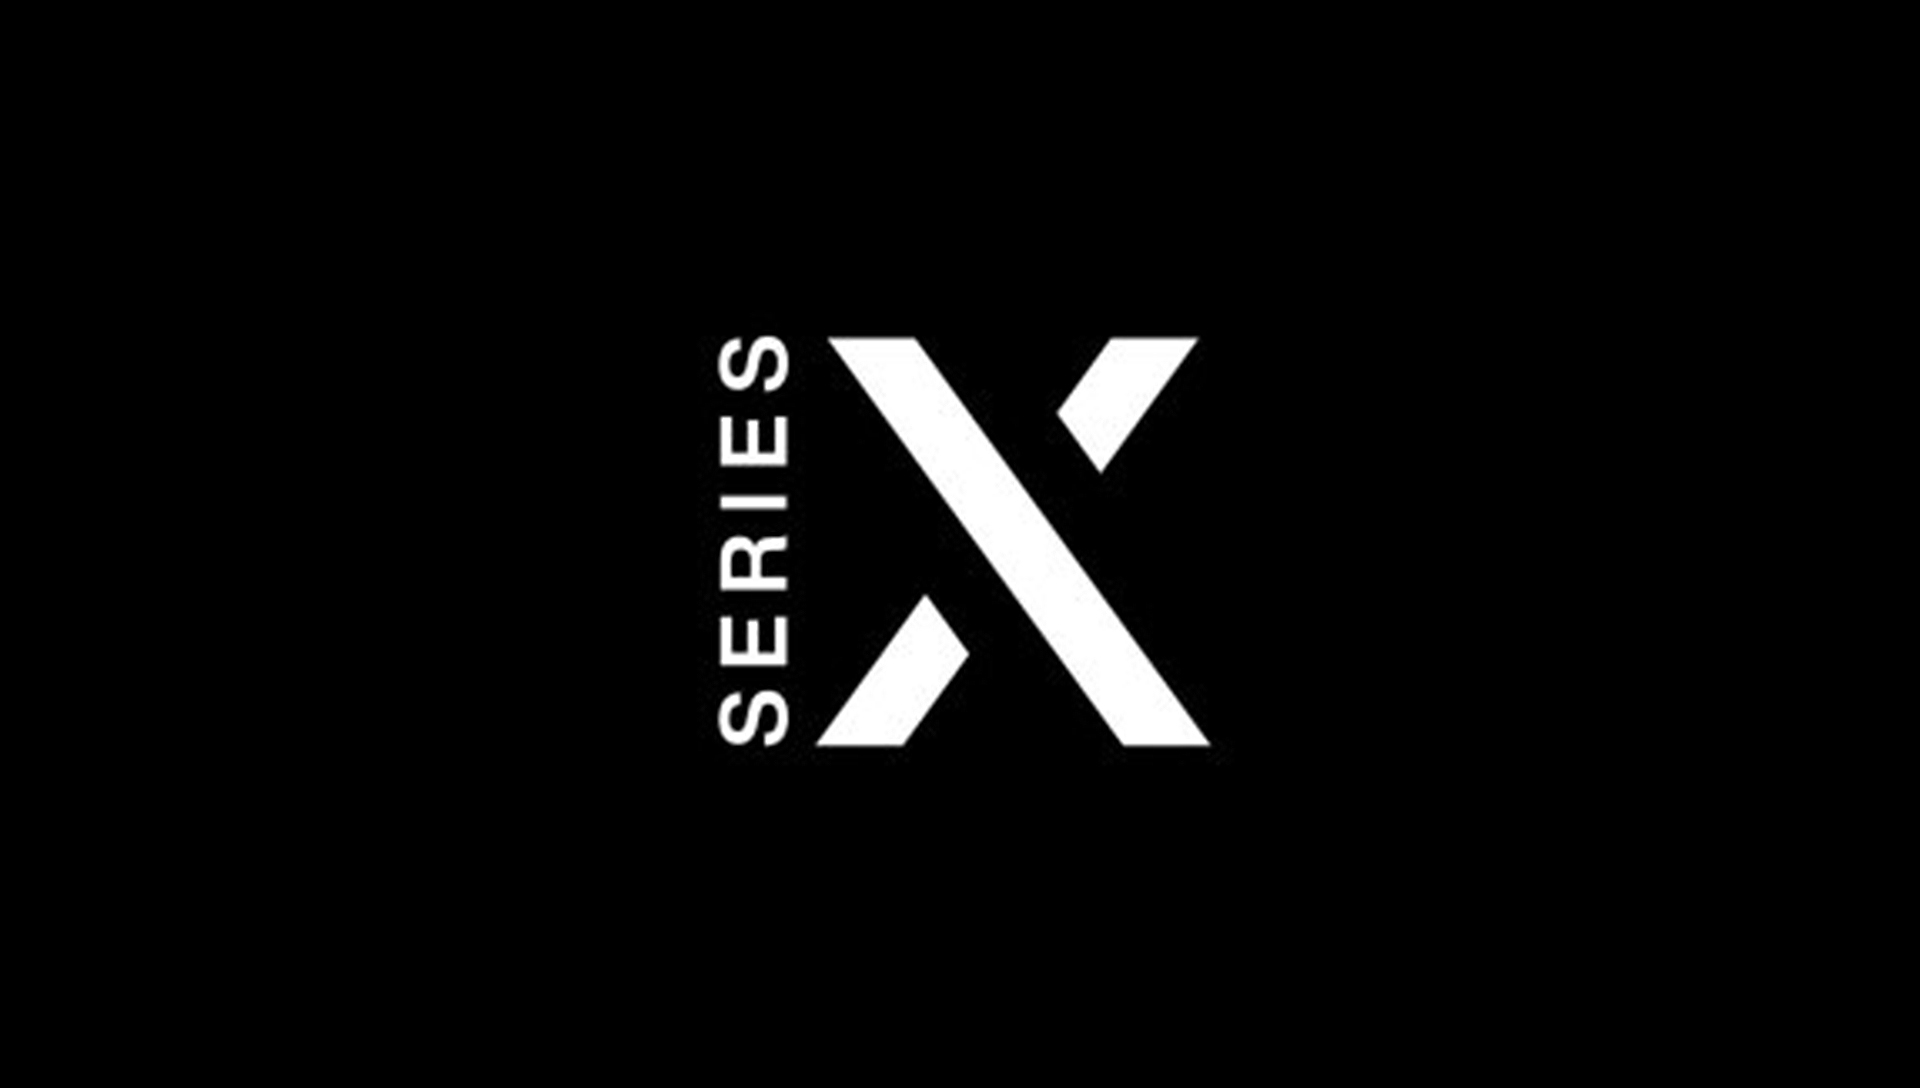 xbox logo design